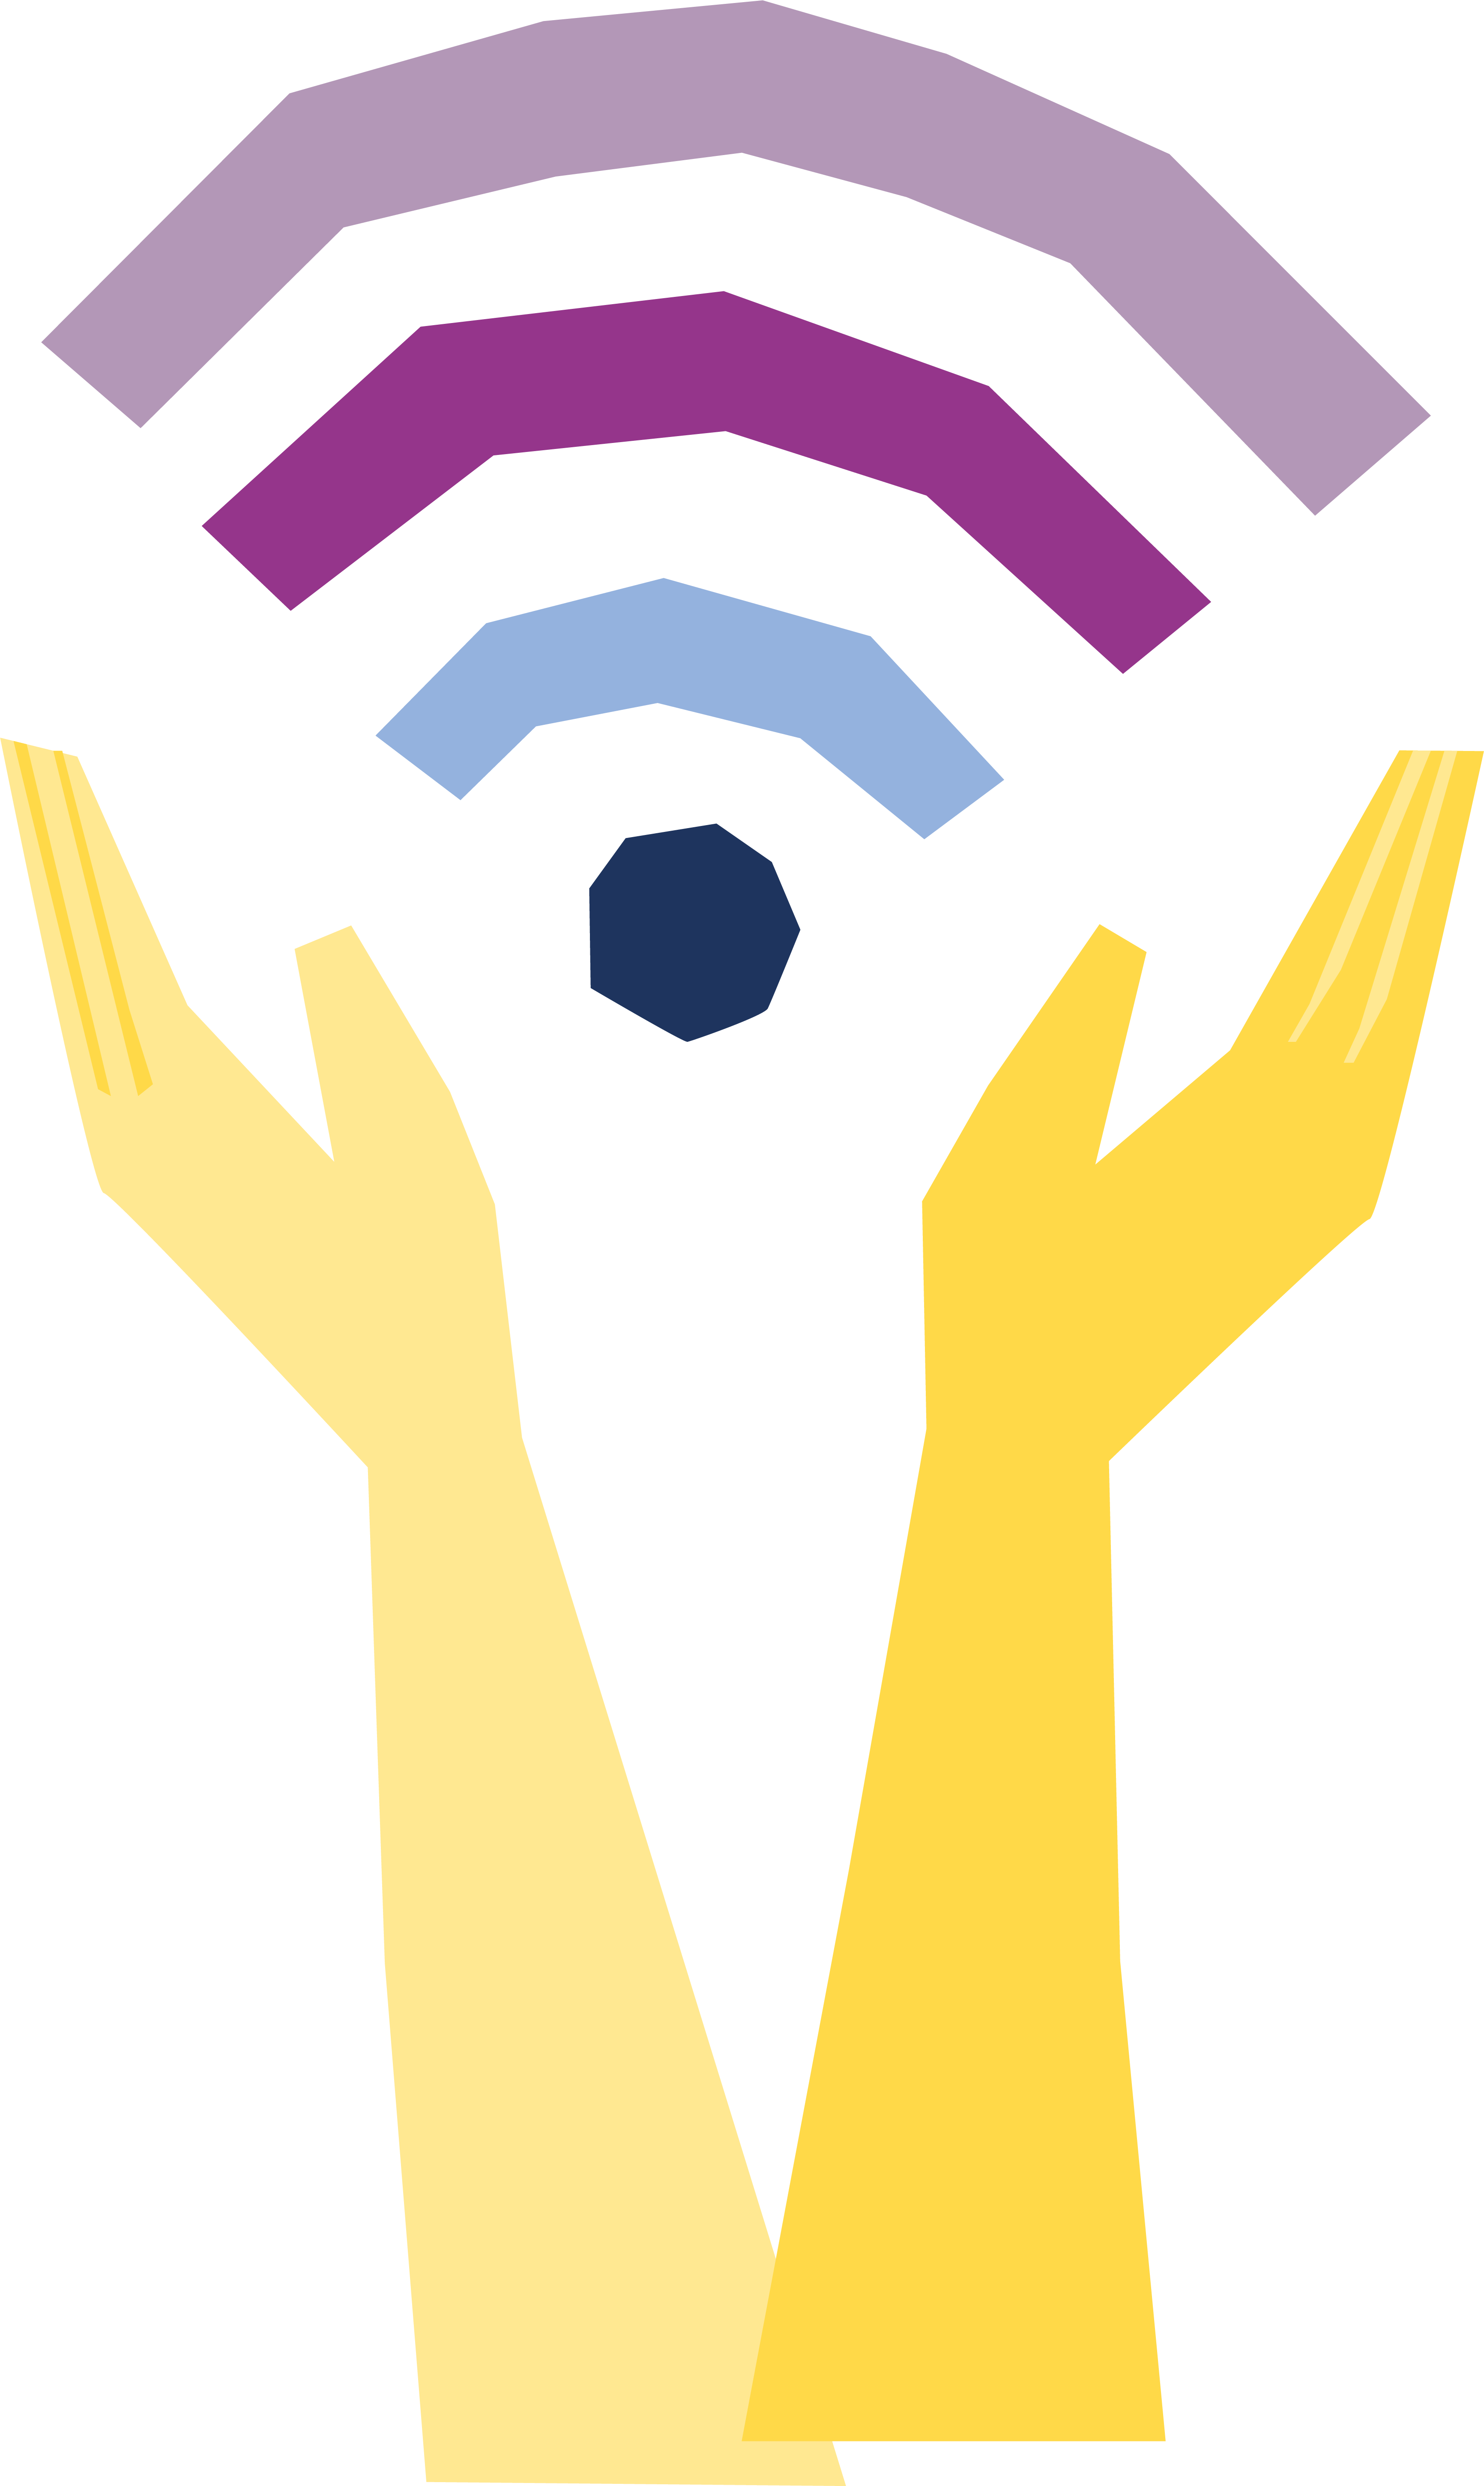 Hænder favner et WiFI ikon som en visualisering af digitaliseringens potentiale